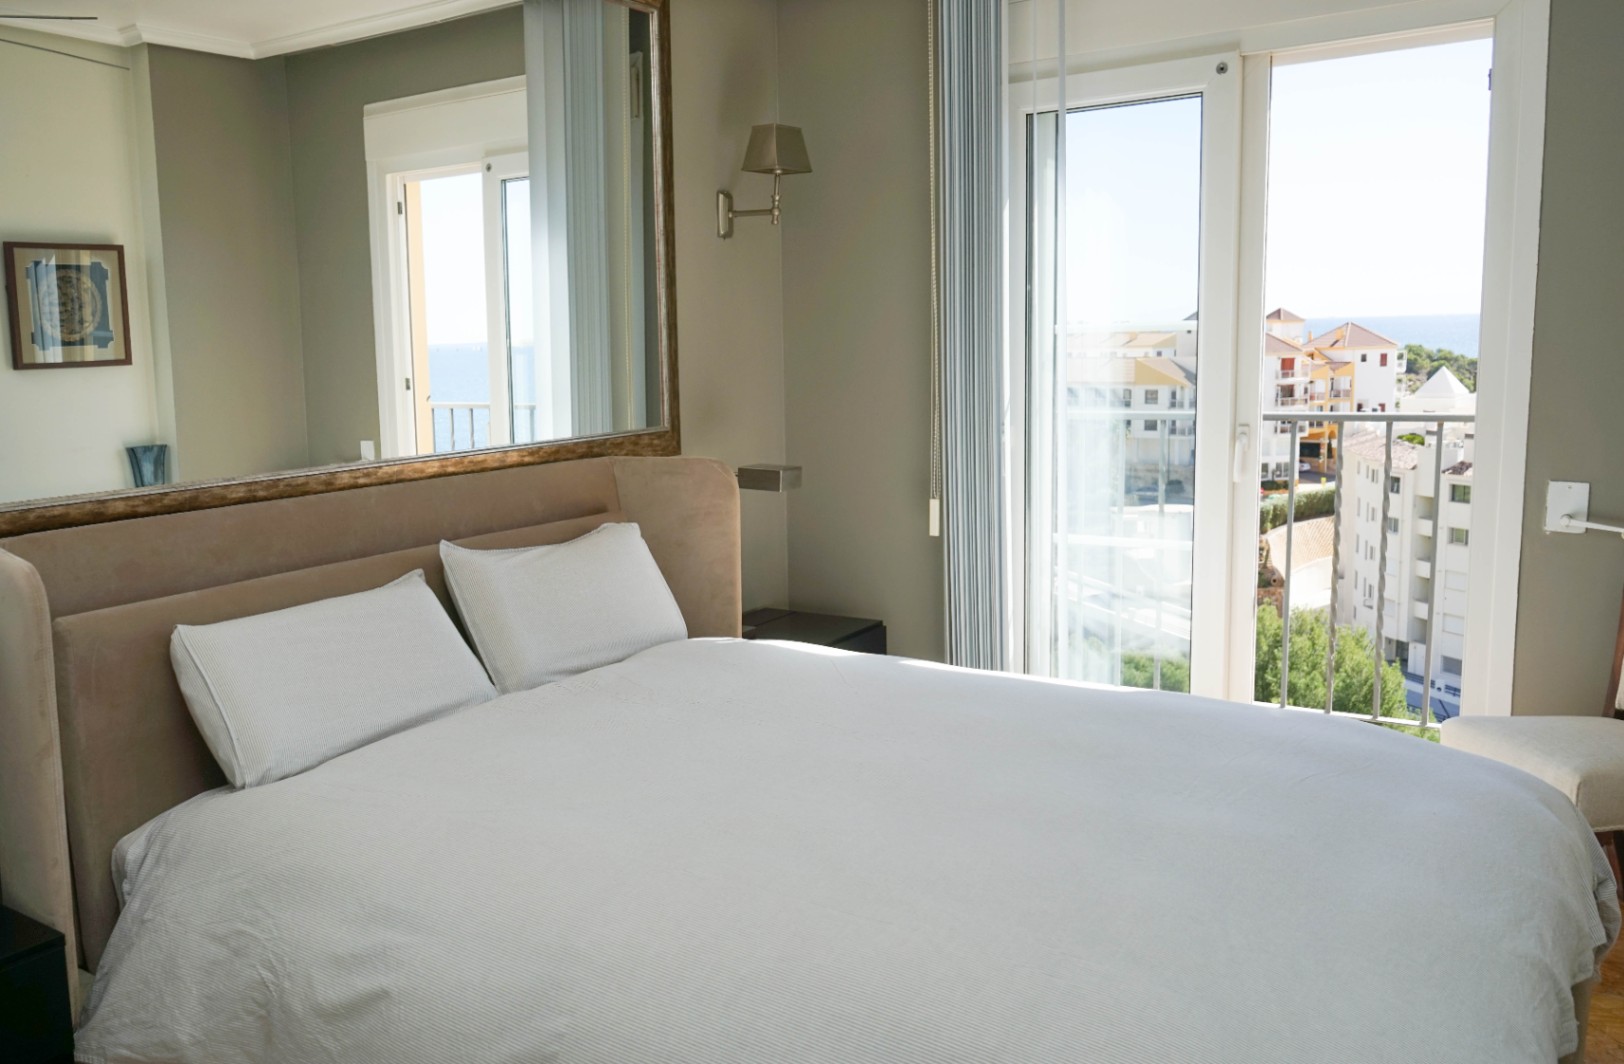 Luksusleilighet i Altea med panoramautsikt over havet: Oppdag ditt ideelle hjem